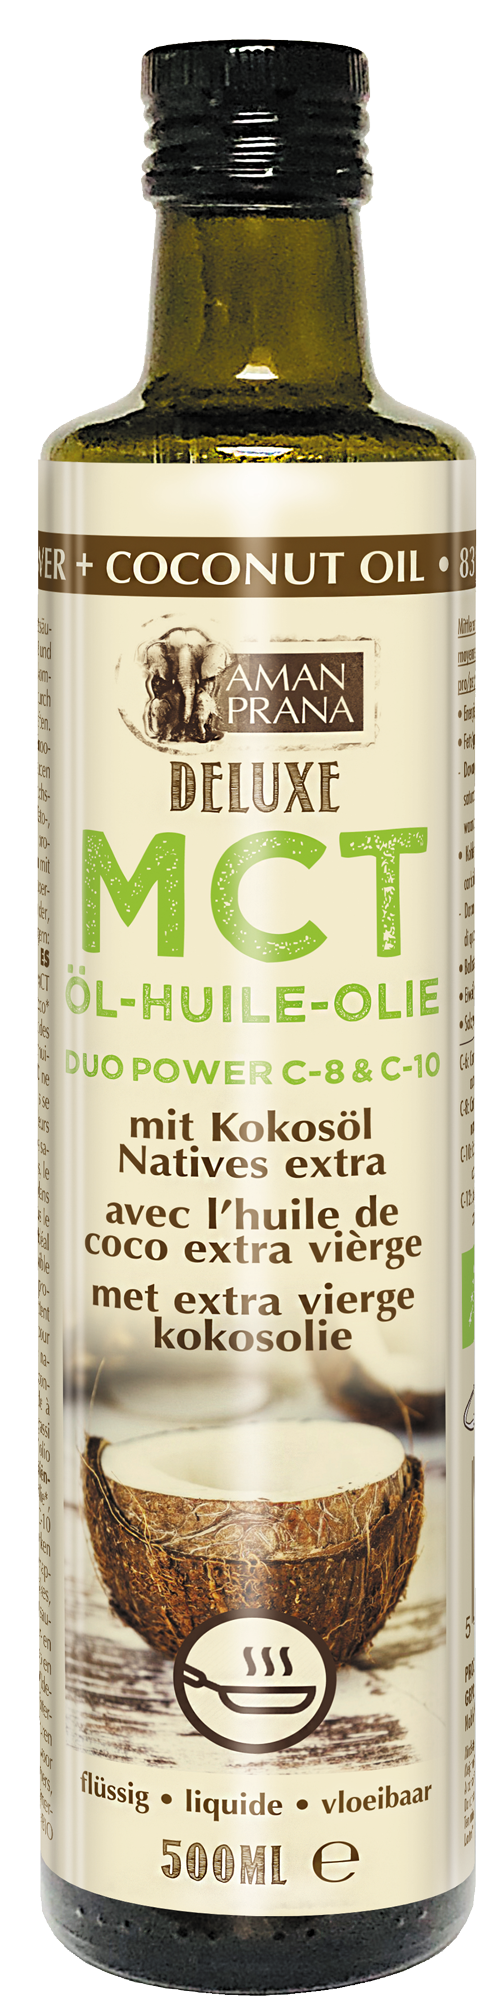 DeLuxe MCT duo-power met Extra vierge kokosolie